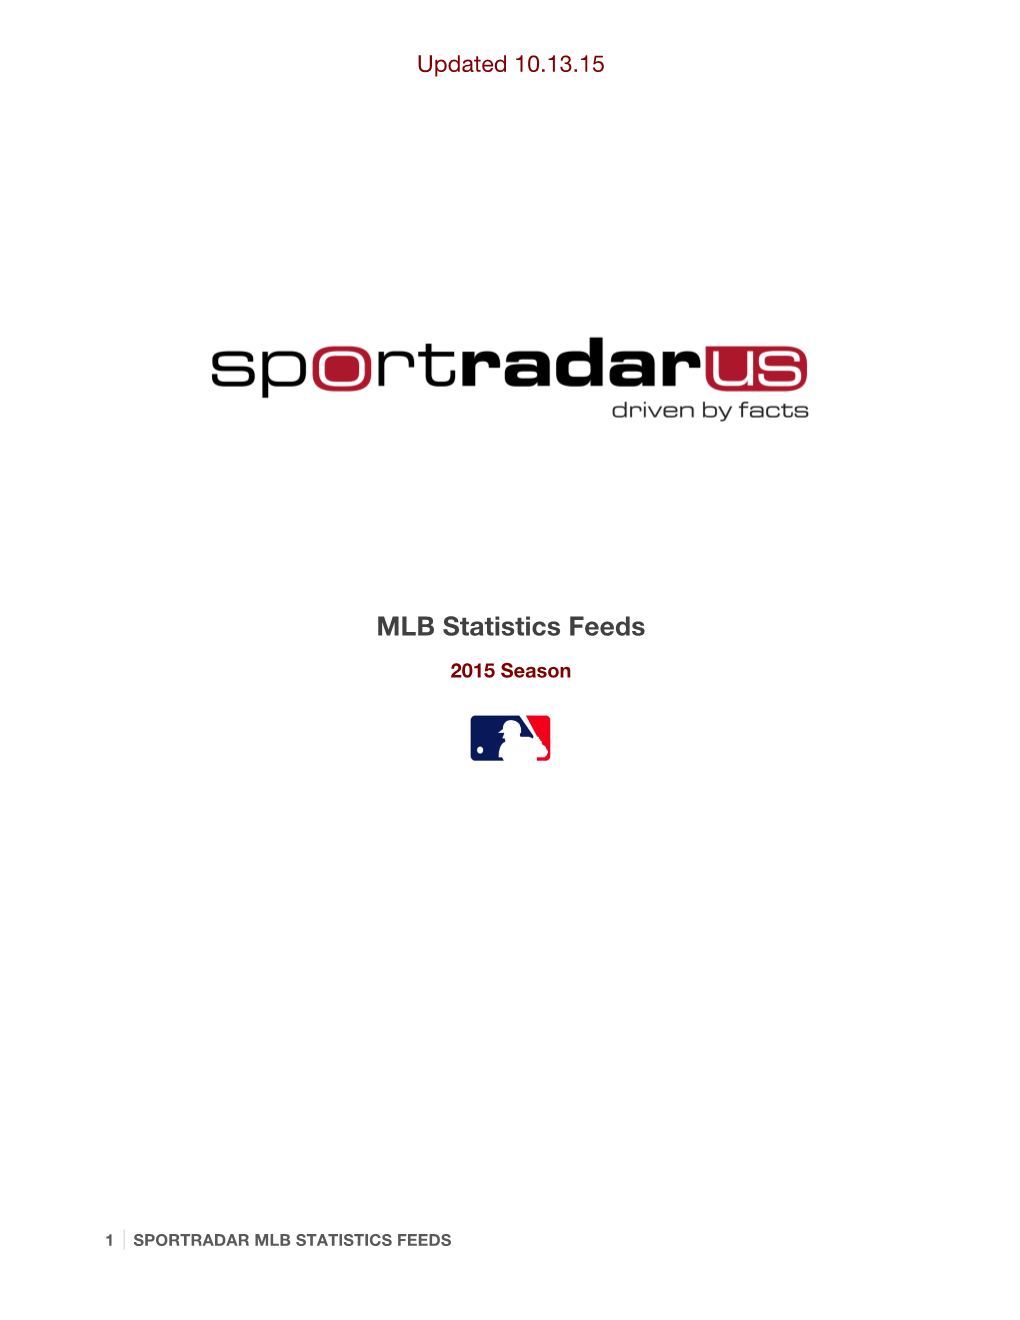 2015 Sportradar MLB Statistics Summary